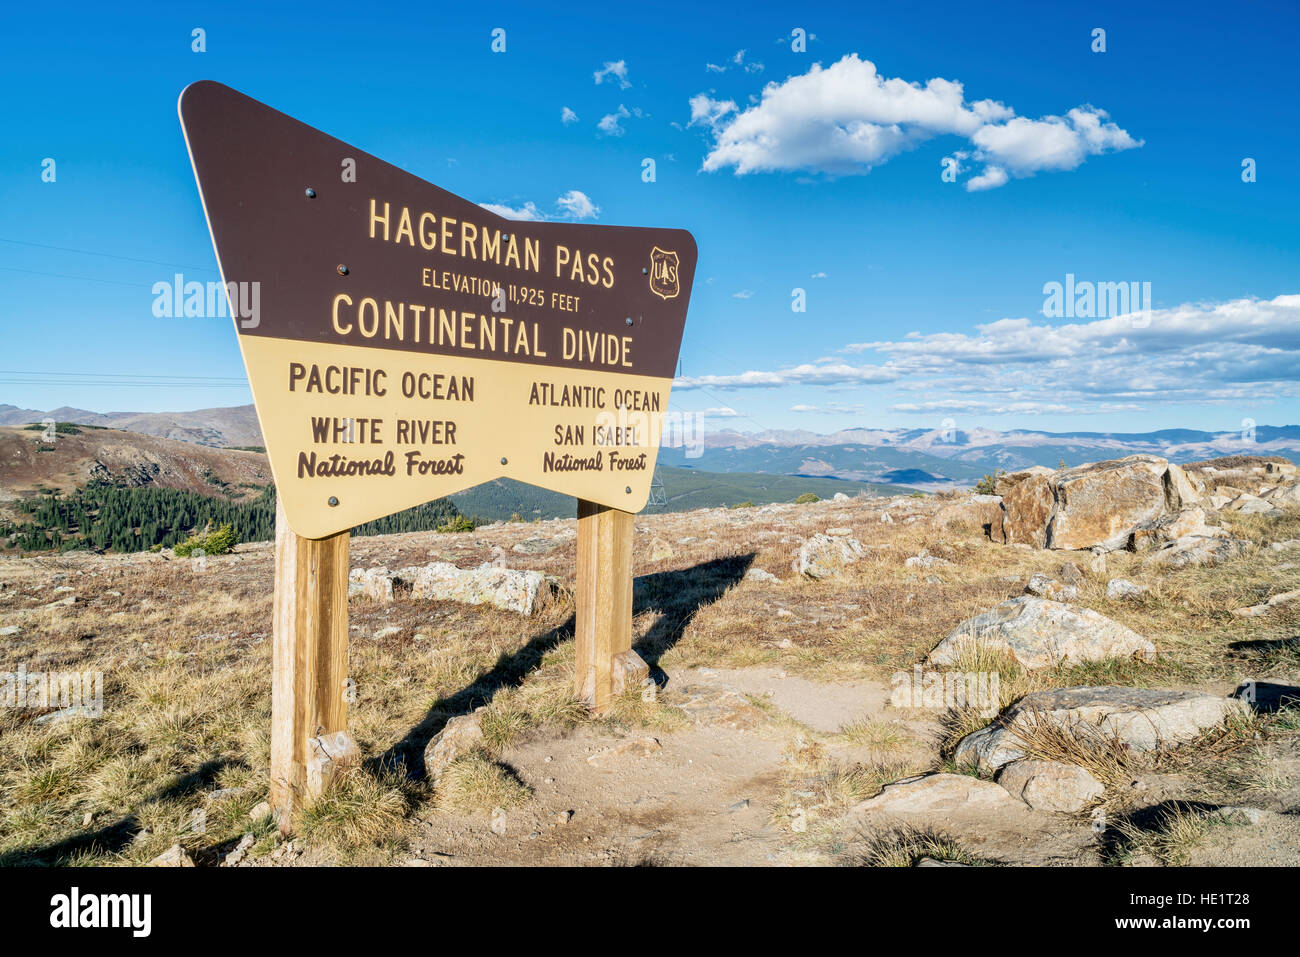 Forest Service sign in corrispondenza di un vertice di Hagerman Pass e continental divide in Colorado di montagne rocciose. Foto Stock